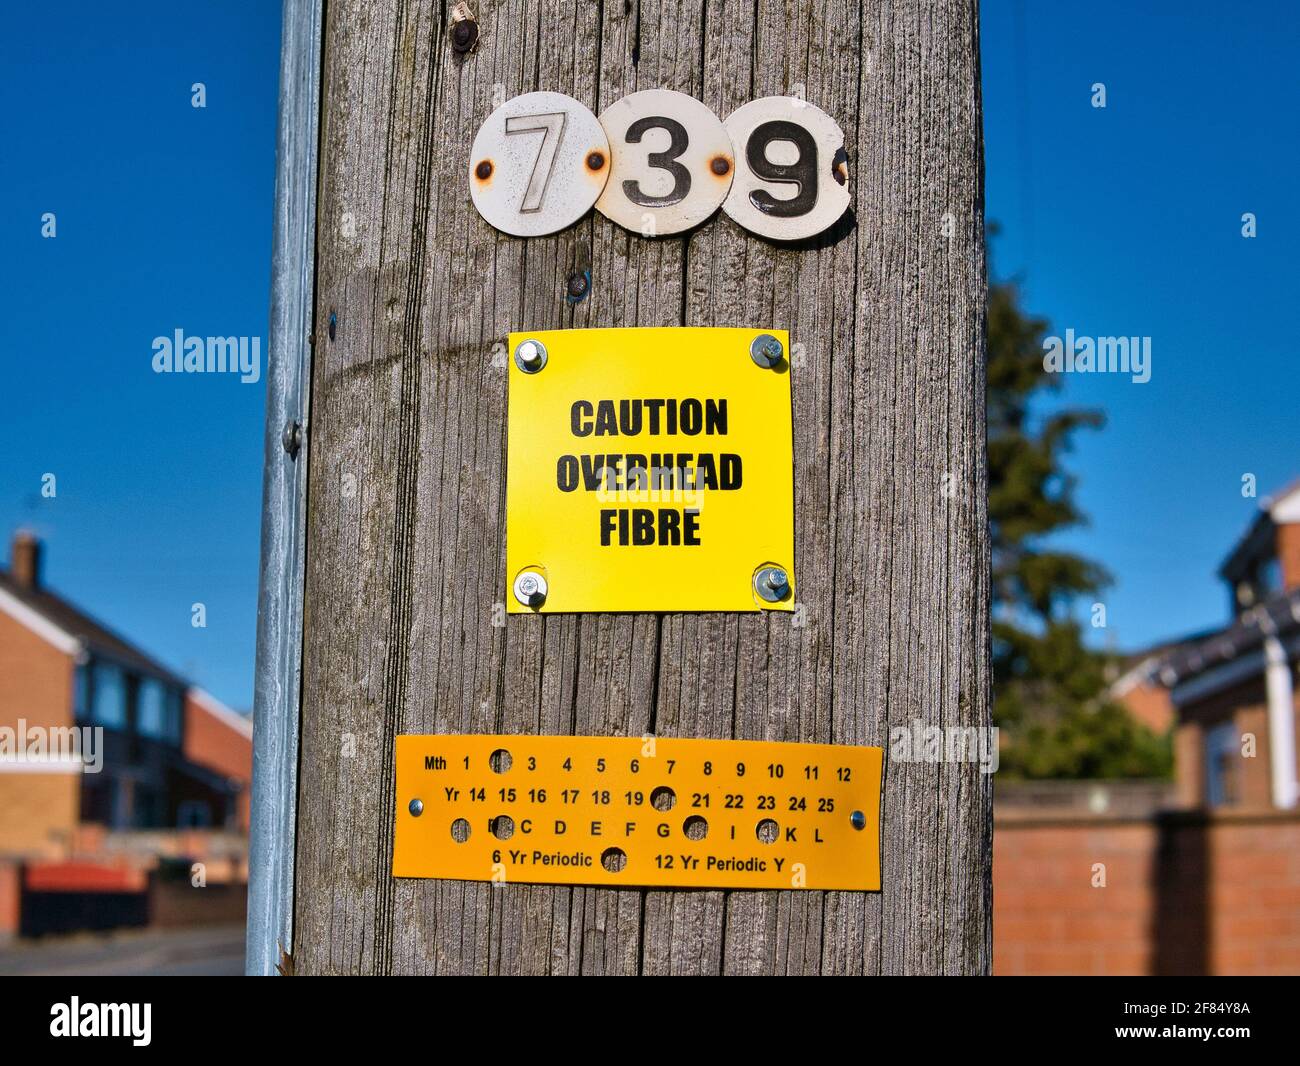 Ein gelbes Schild, das an einem hölzernen Telegrafenmast befestigt ist, warnt davor, dass Glasfaserleitungen über dem Kopf liegen. Aufgenommen an einem sonnigen Tag in einem städtischen Gebiet im Nordwesten Englands. Stockfoto